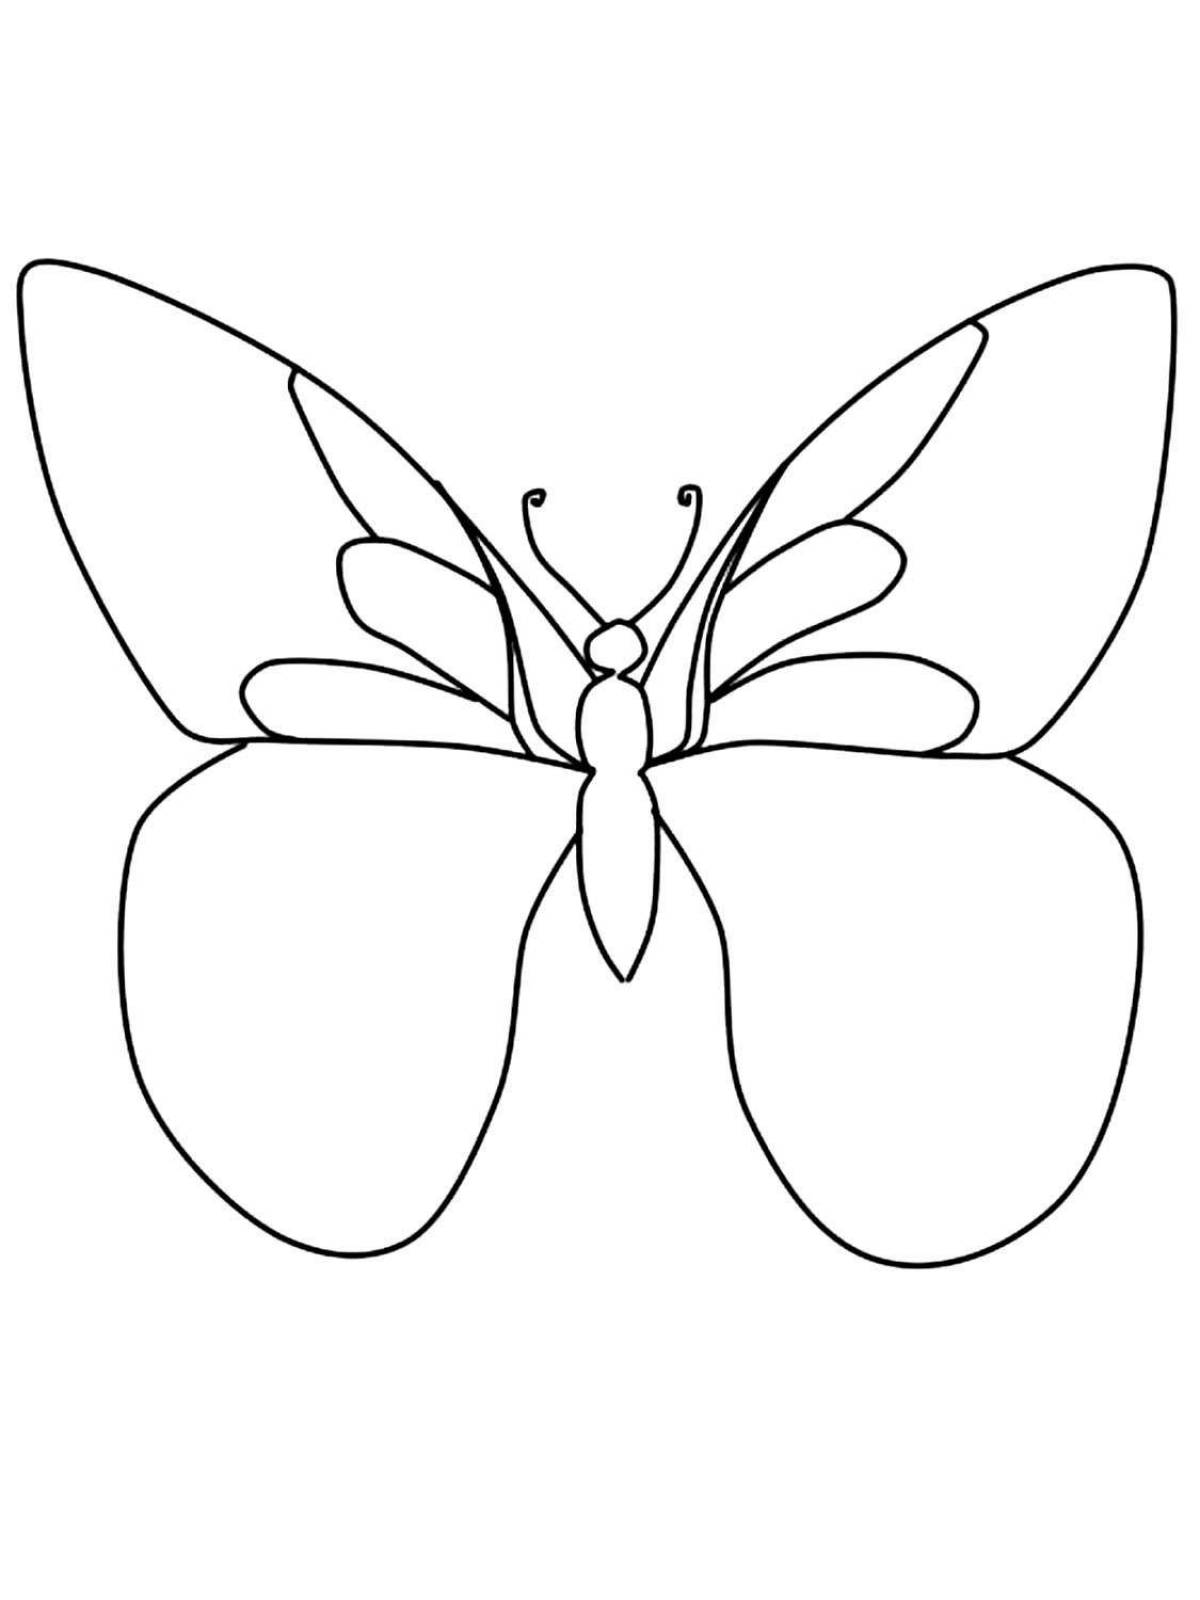 Красочная раскраска крылья бабочки